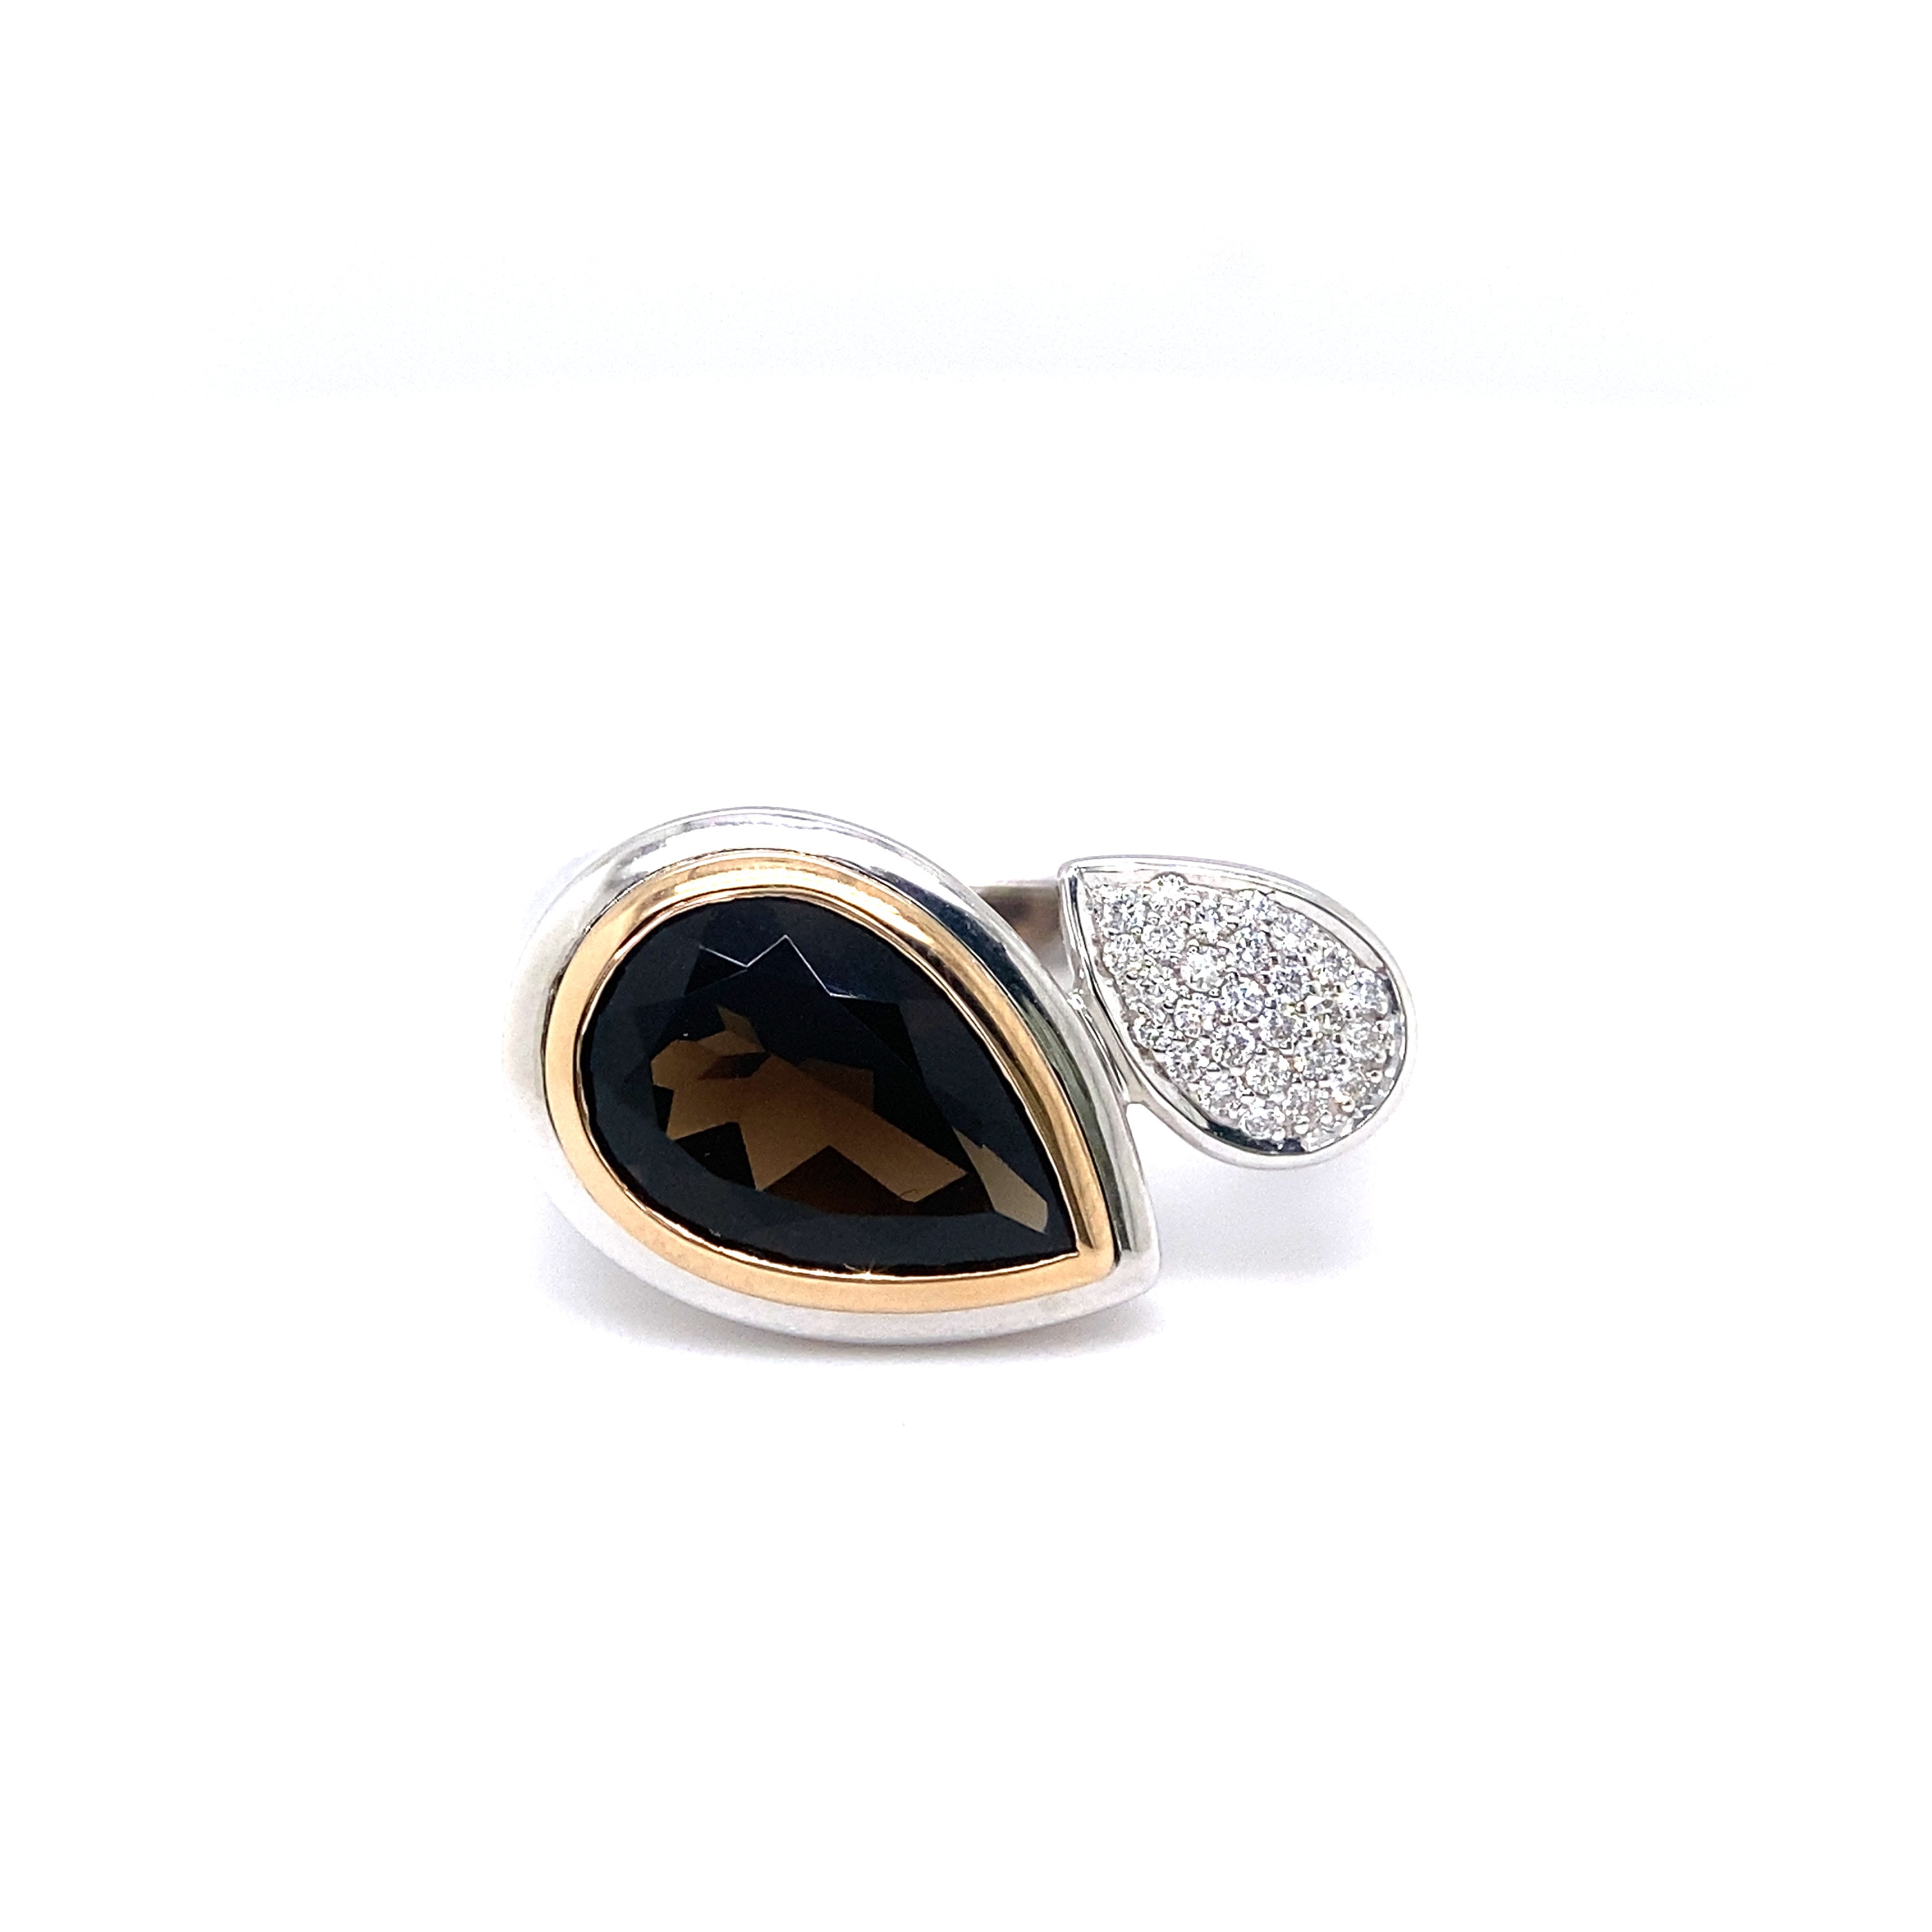 9ct white and rose gold smokey quartz and diamond ring